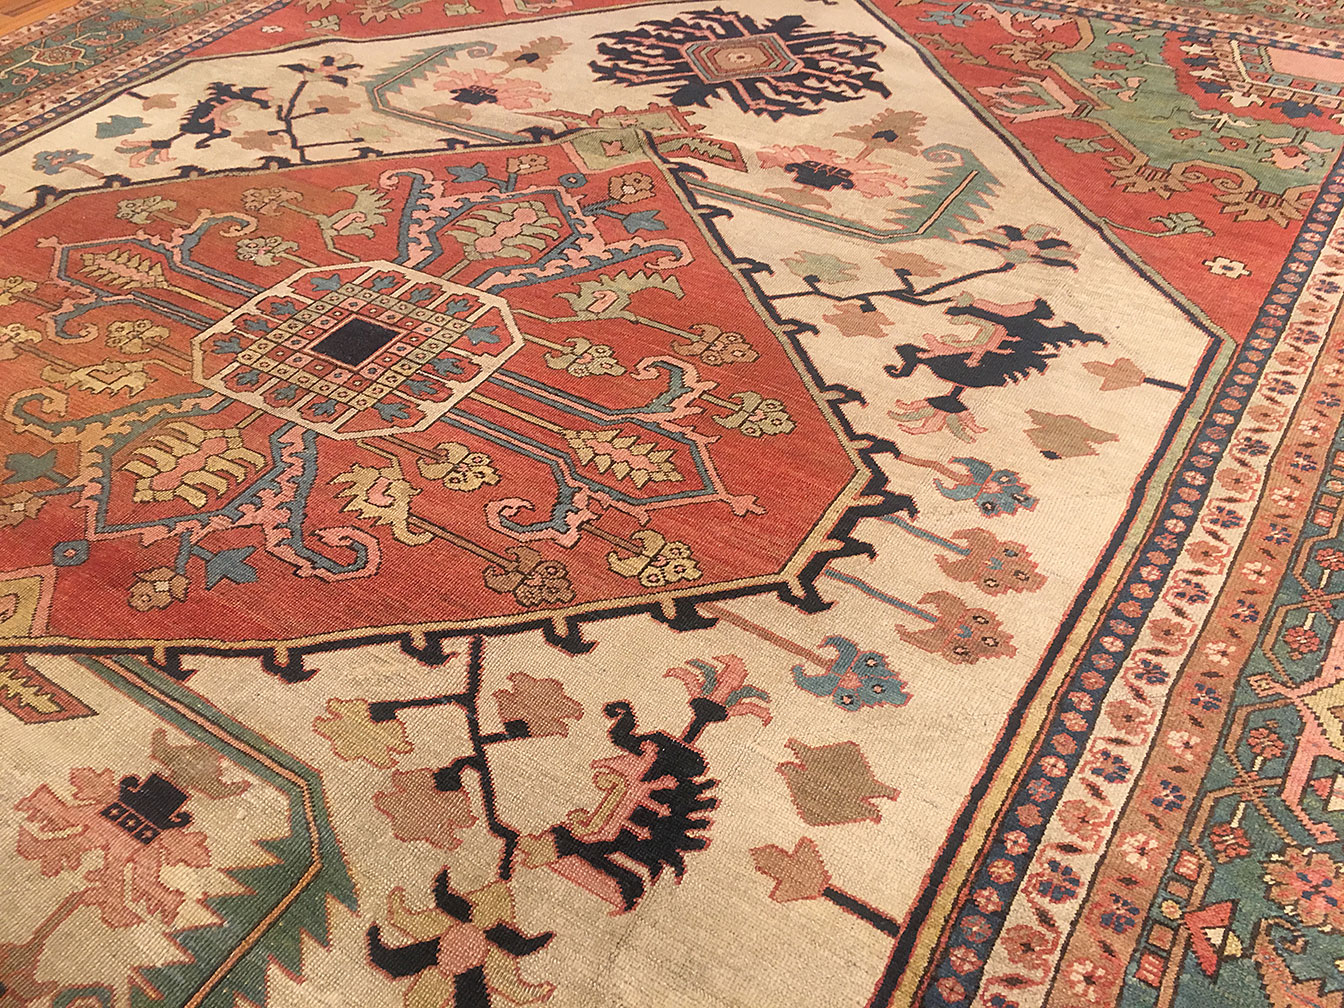 Antique heriz Carpet - # 53465